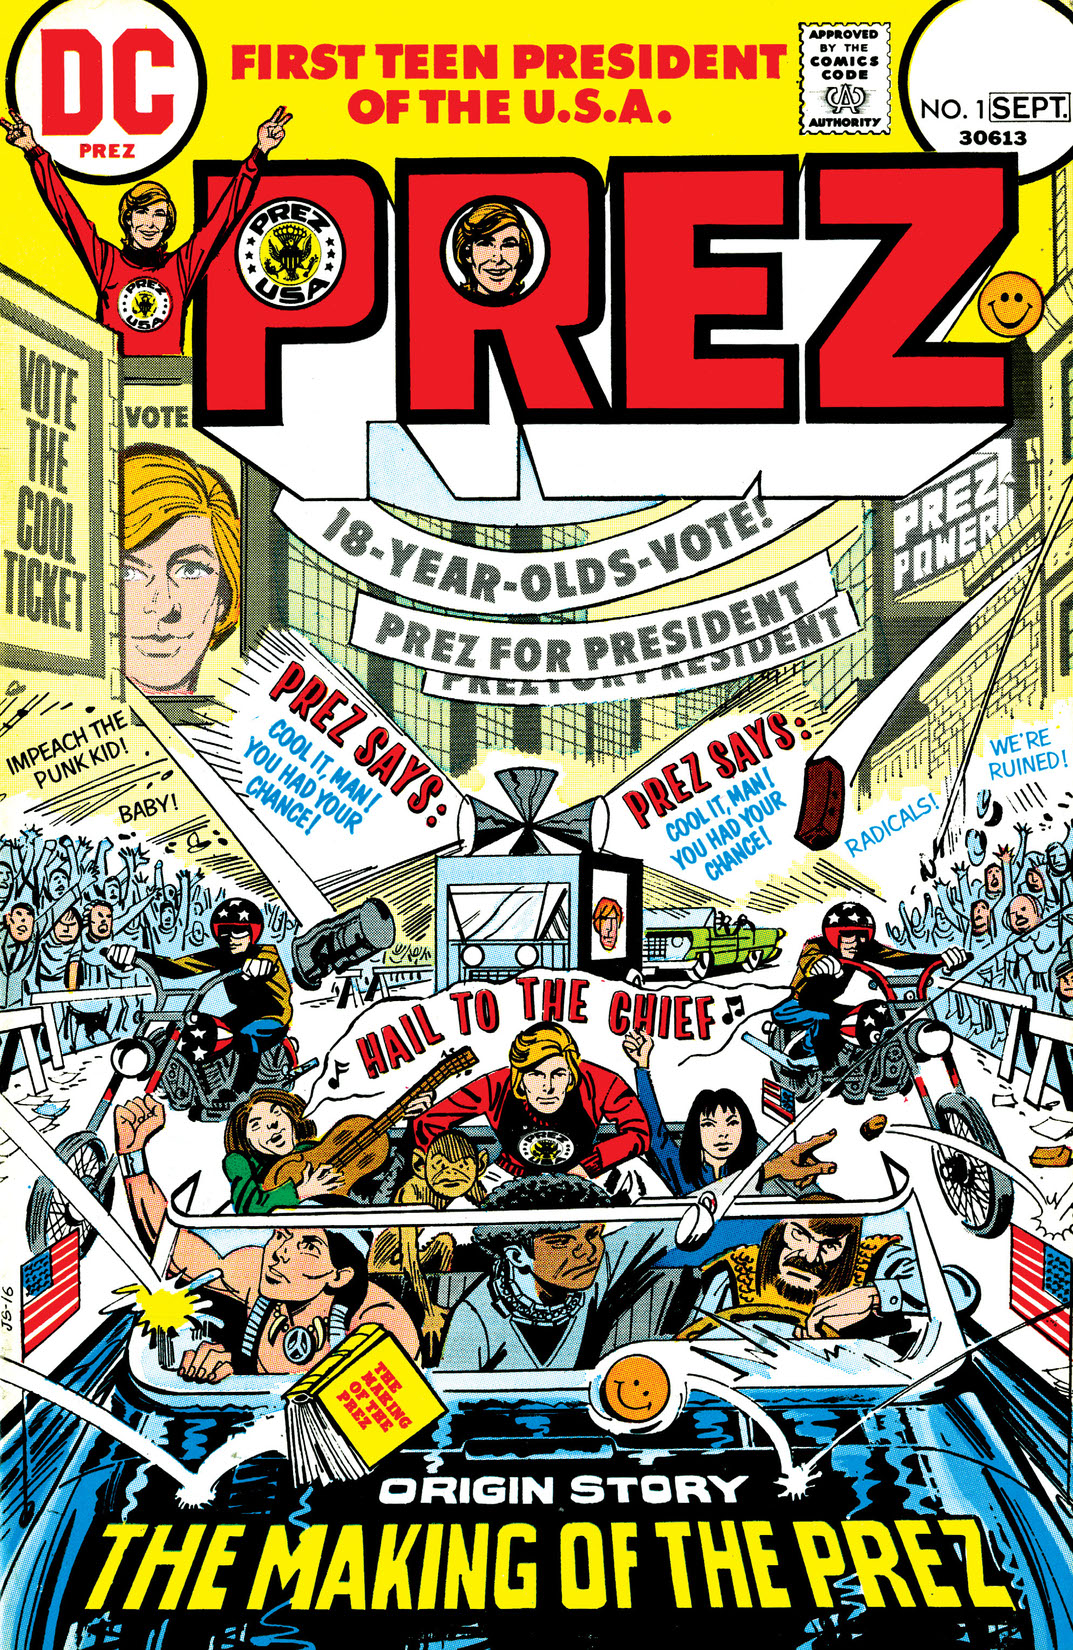 Prez (1973-) #1 preview images